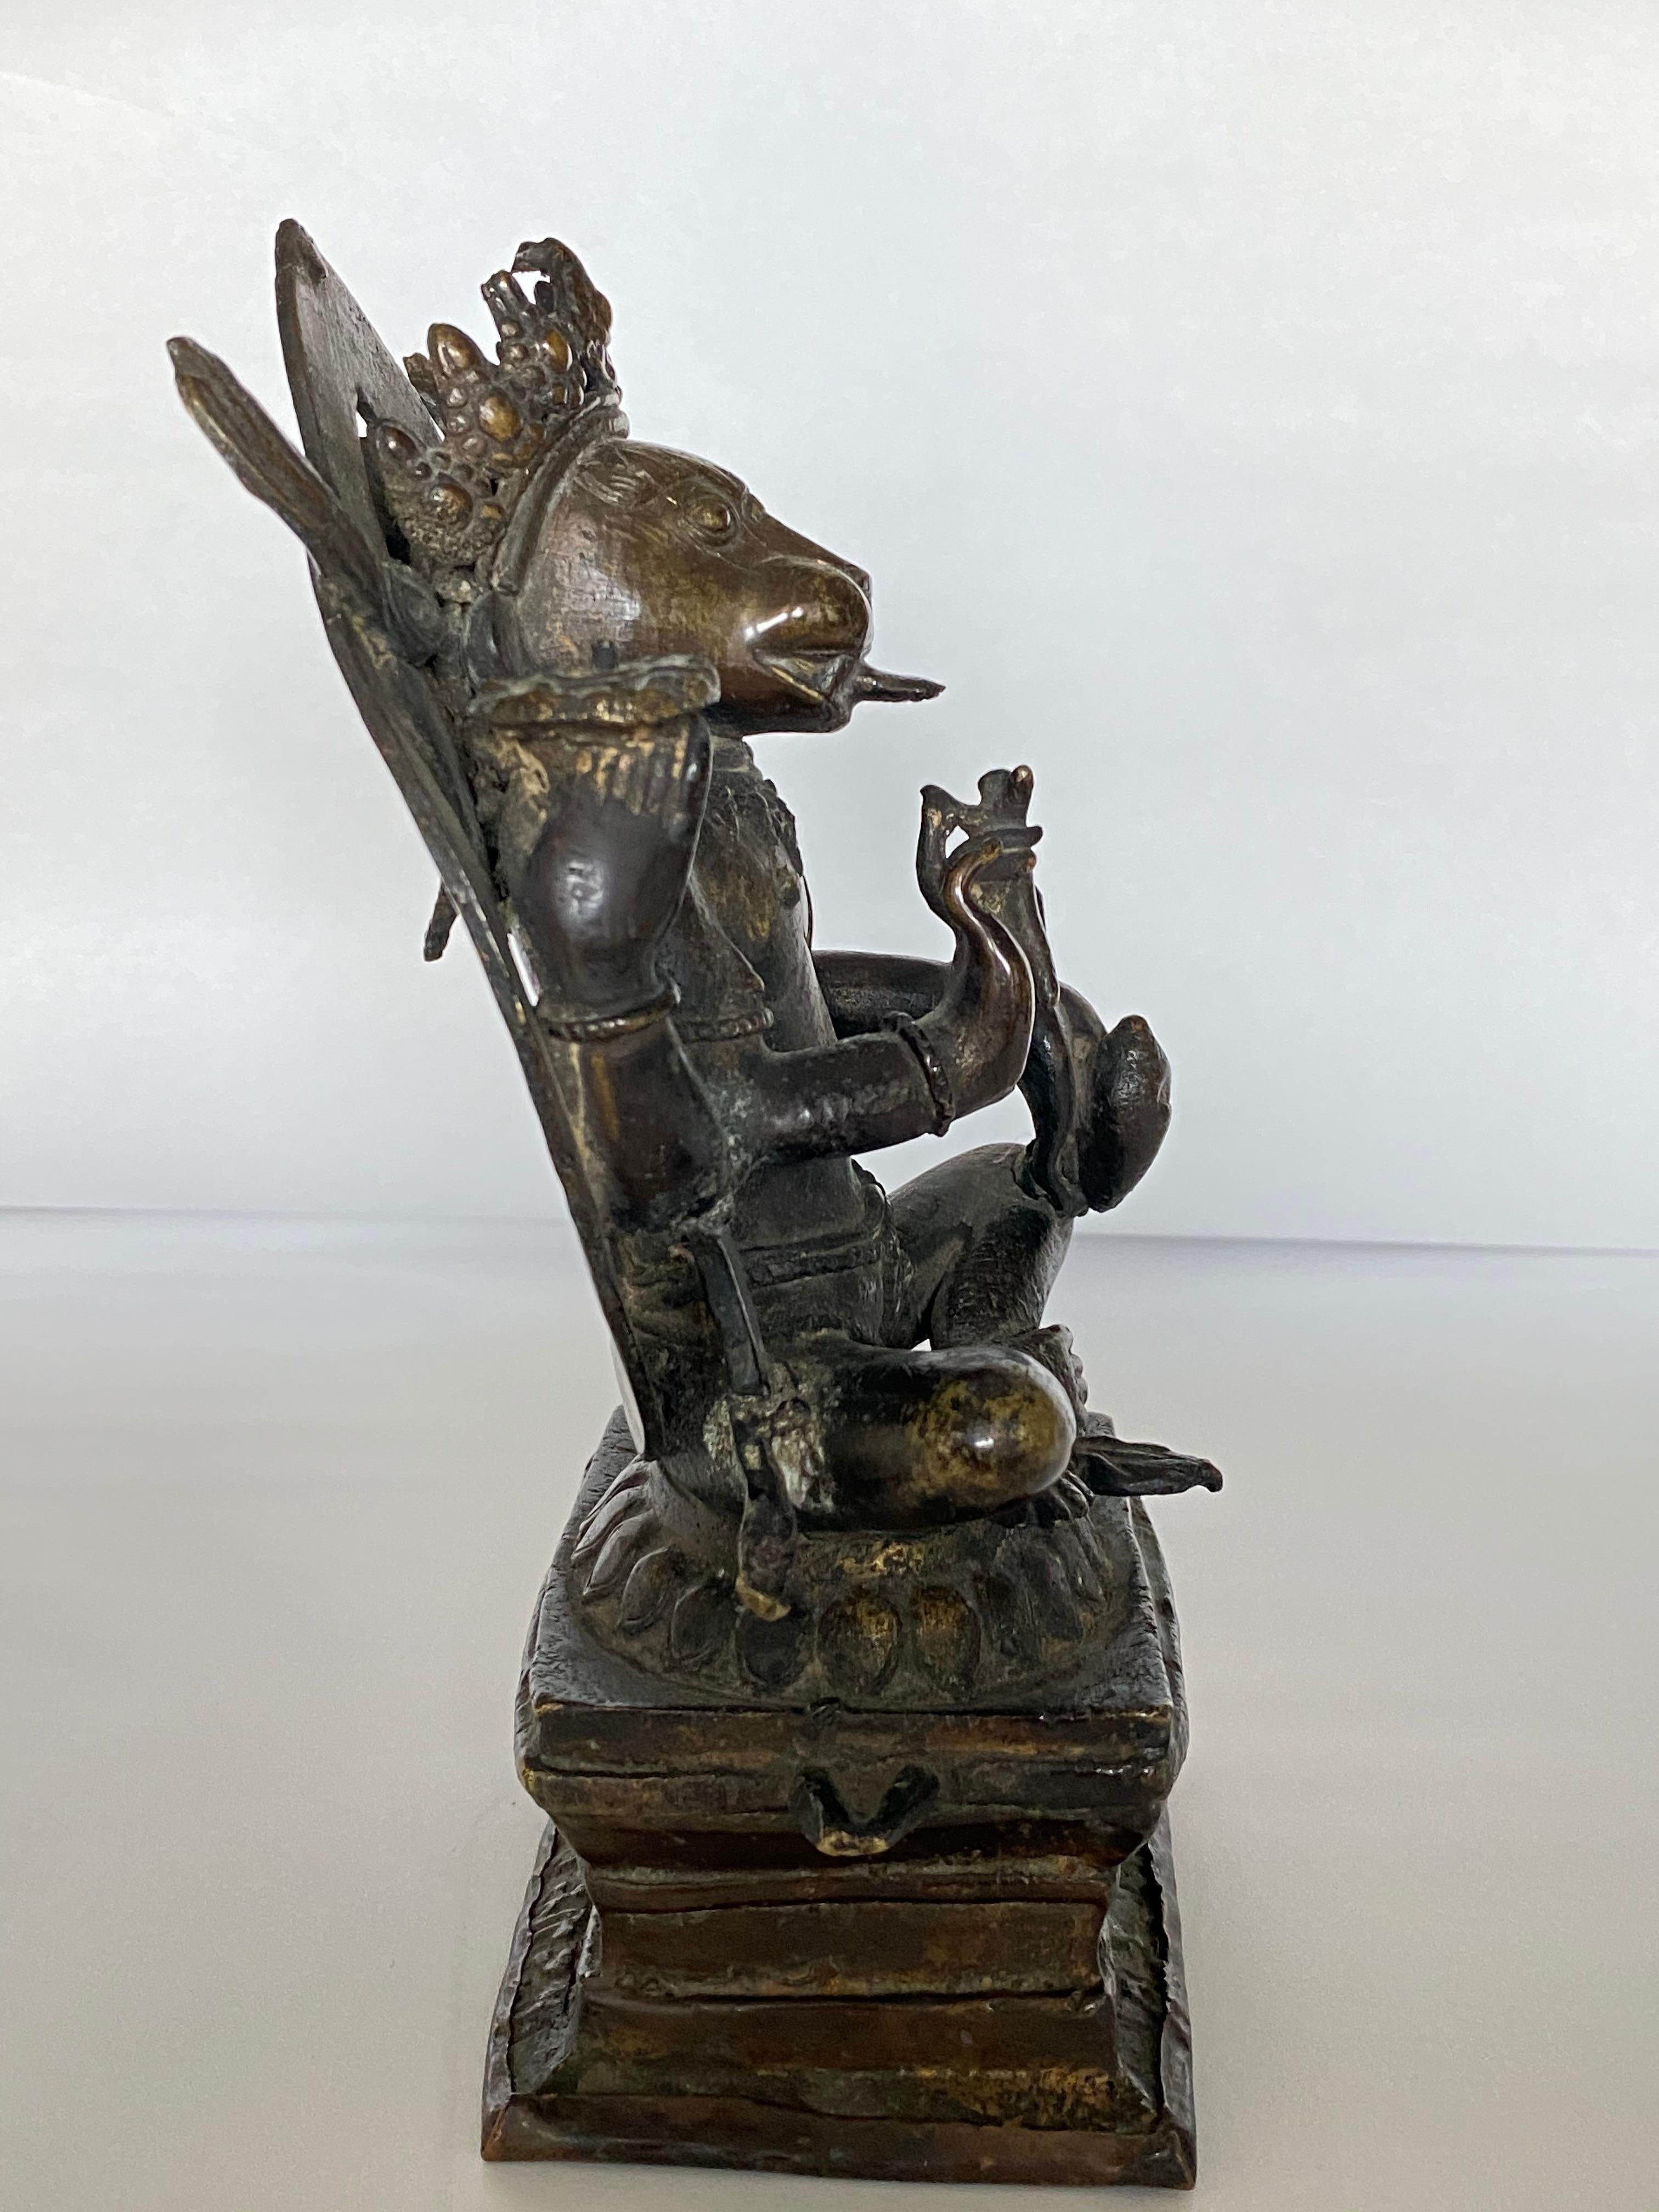 Diese wunderschön patinierte Bronzefigur von Yoga Narasimha, der vierten Inkarnation von Vishnu als Mensch-Löwe, stammt aus Kaschmir in Nordindien. Nara bedeutet Mensch und simha bedeutet Löwe. Er sitzt auf einem Lotos.

Vergleich mit einem